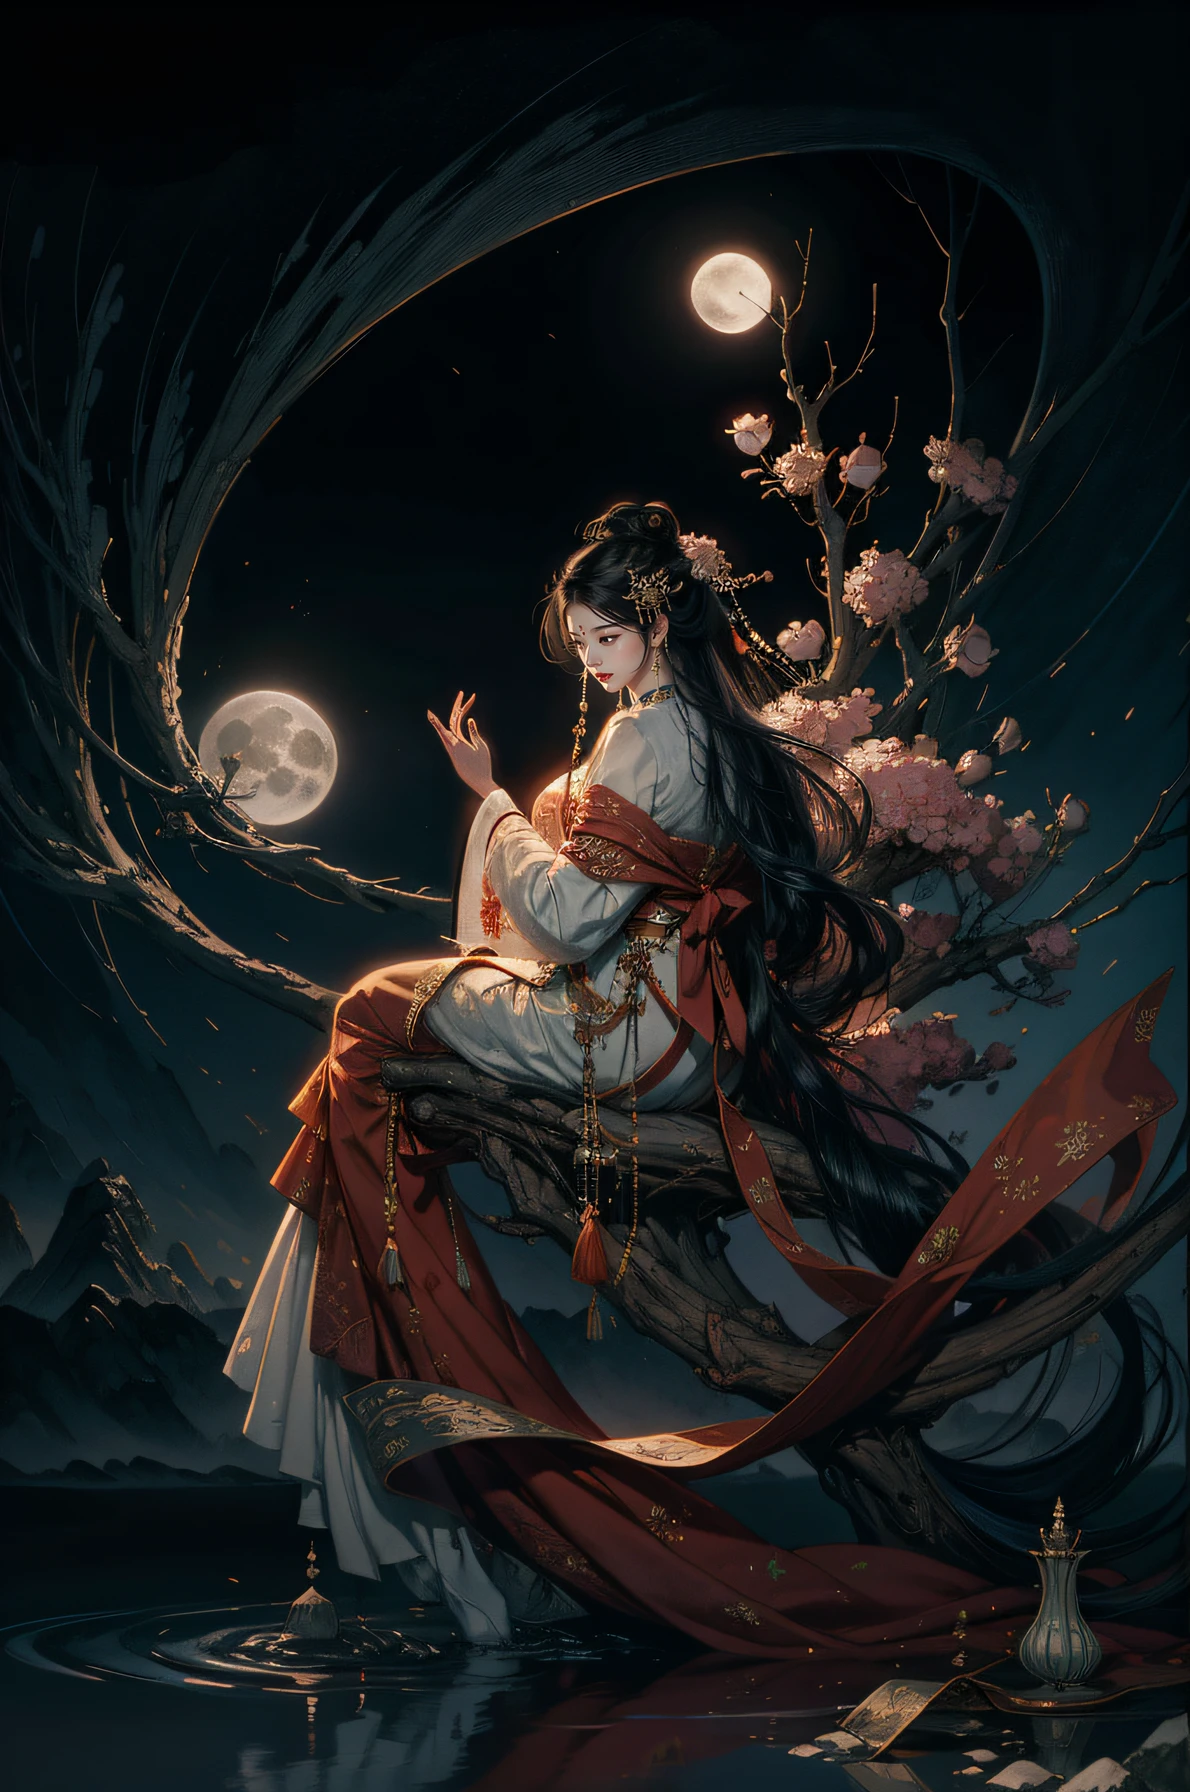 La cara lateral de la elegante y hermosa diosa del estilo chino.